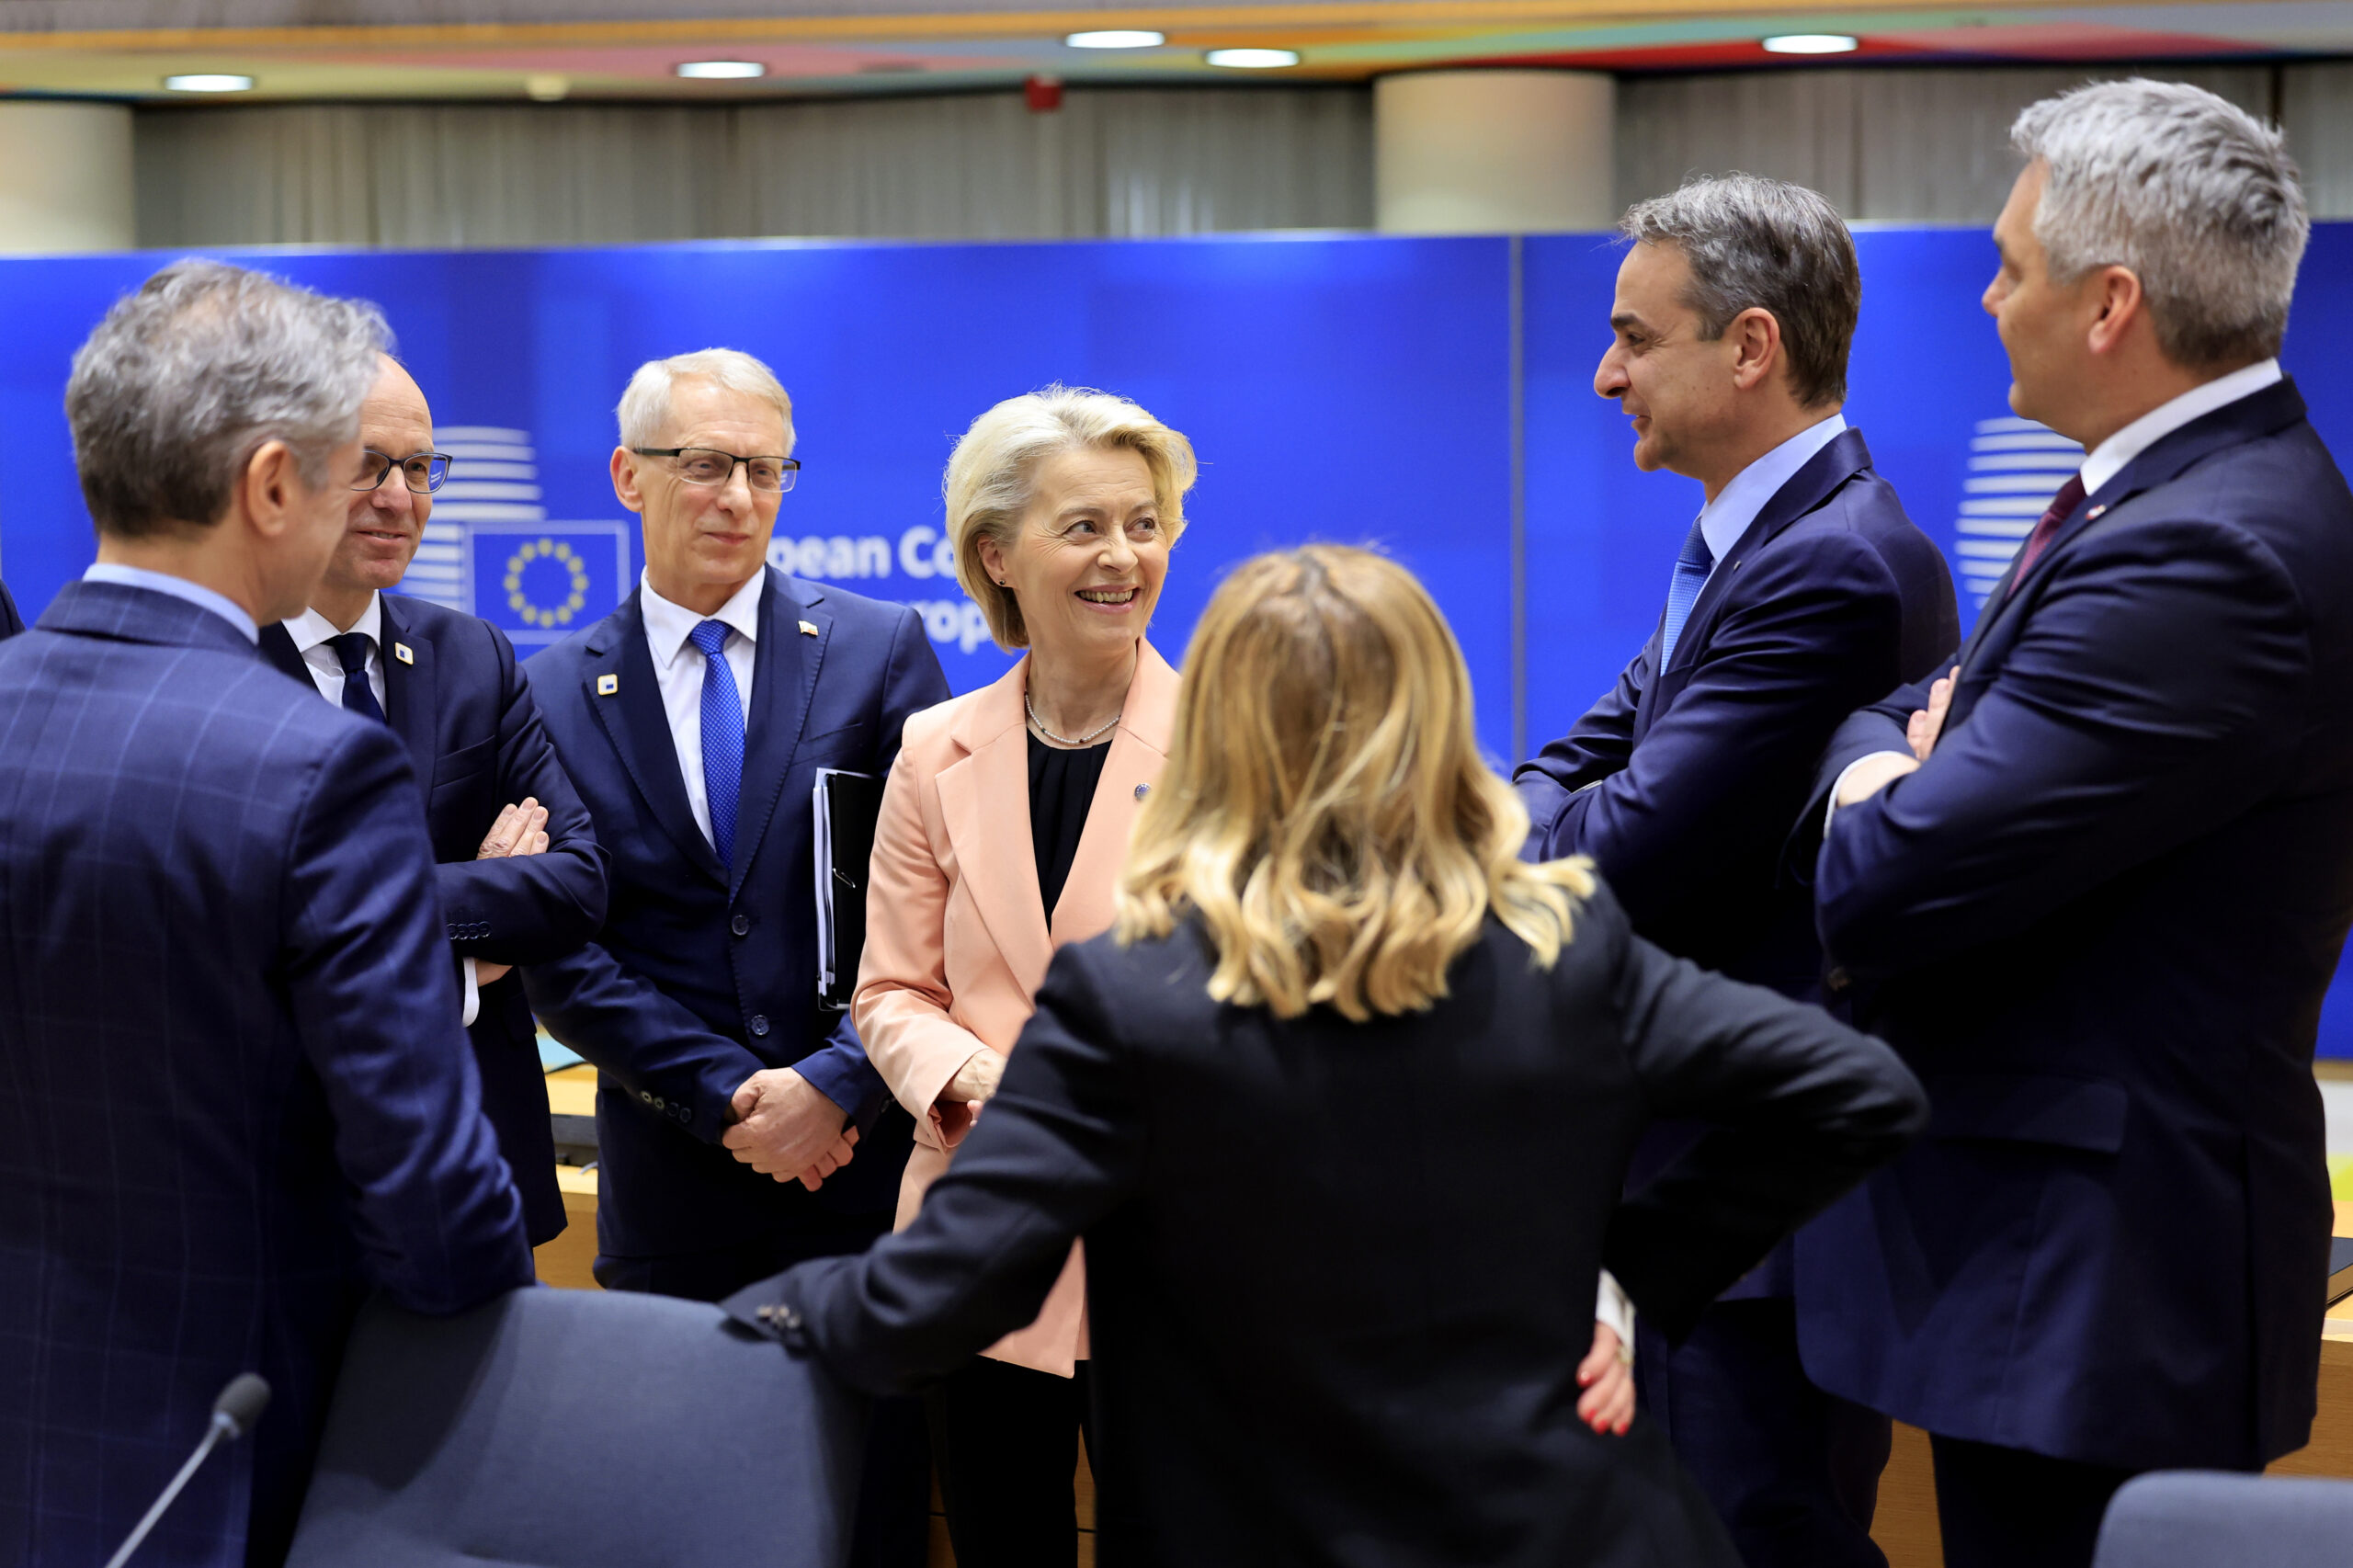 Σύνοδος Κορυφής ΕΕ: Επιβεβαιώθηκε η εκτίμηση «συμπερασμάτων χωρίς μεγάλες εντάσεις»